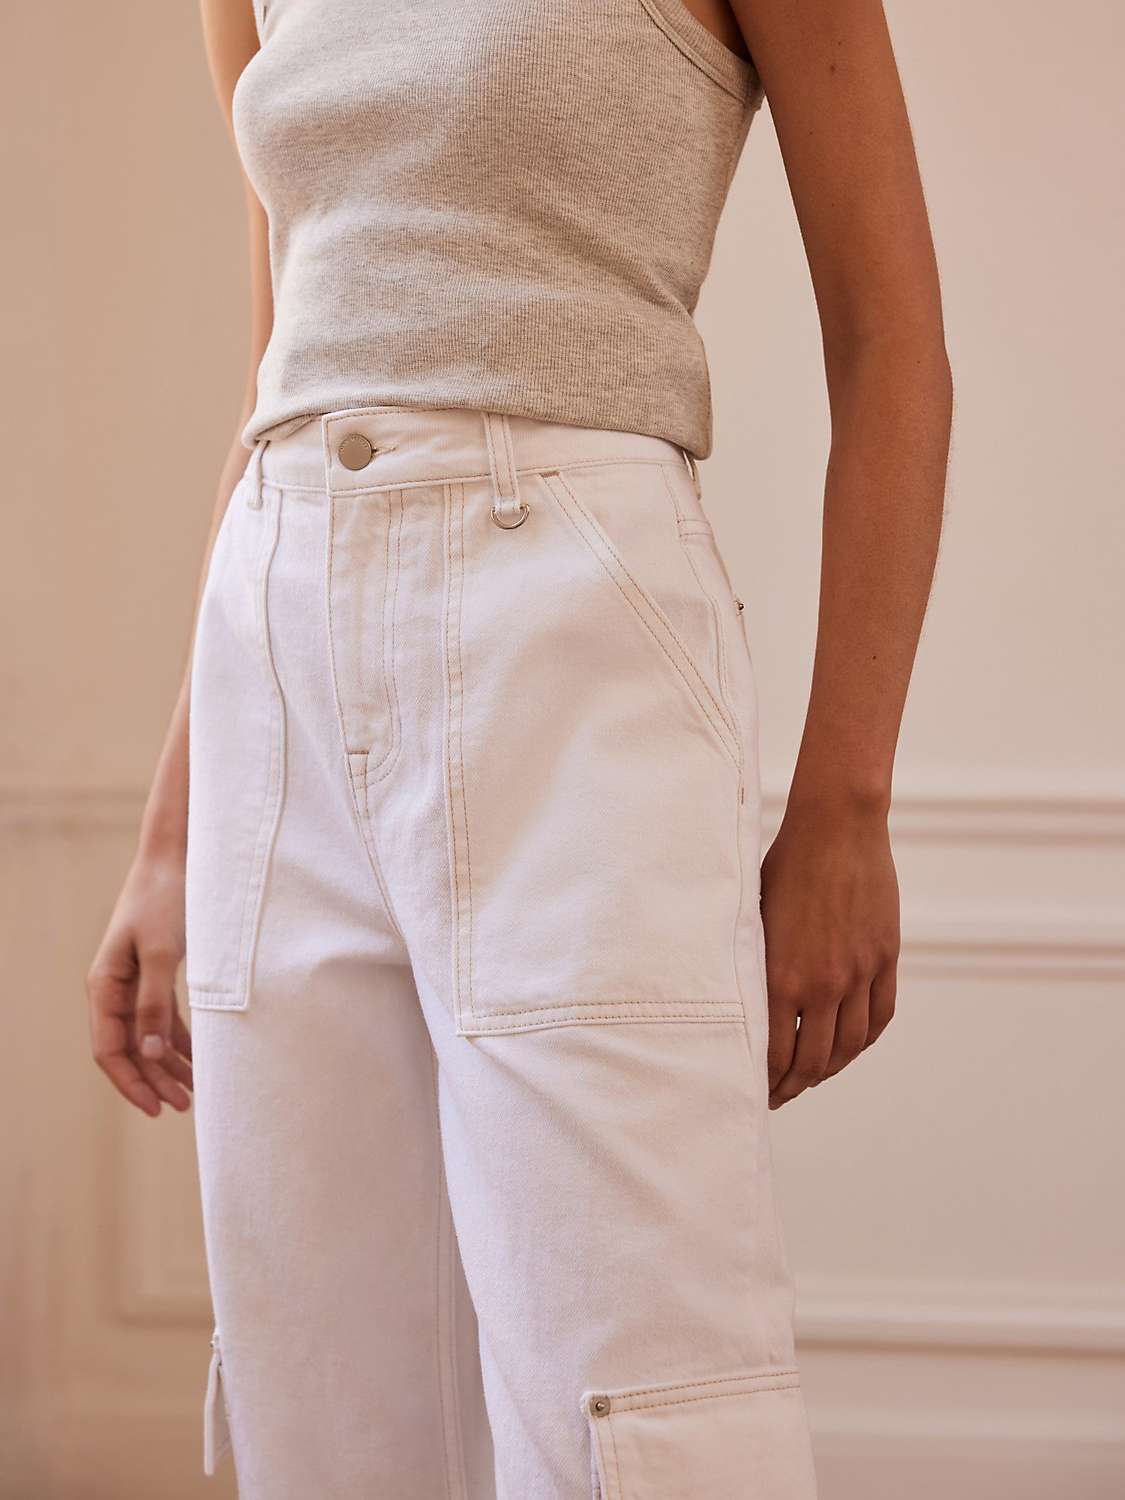 Buy Mint Velvet Cargo Wide Leg Jeans, White Ivory Online at johnlewis.com